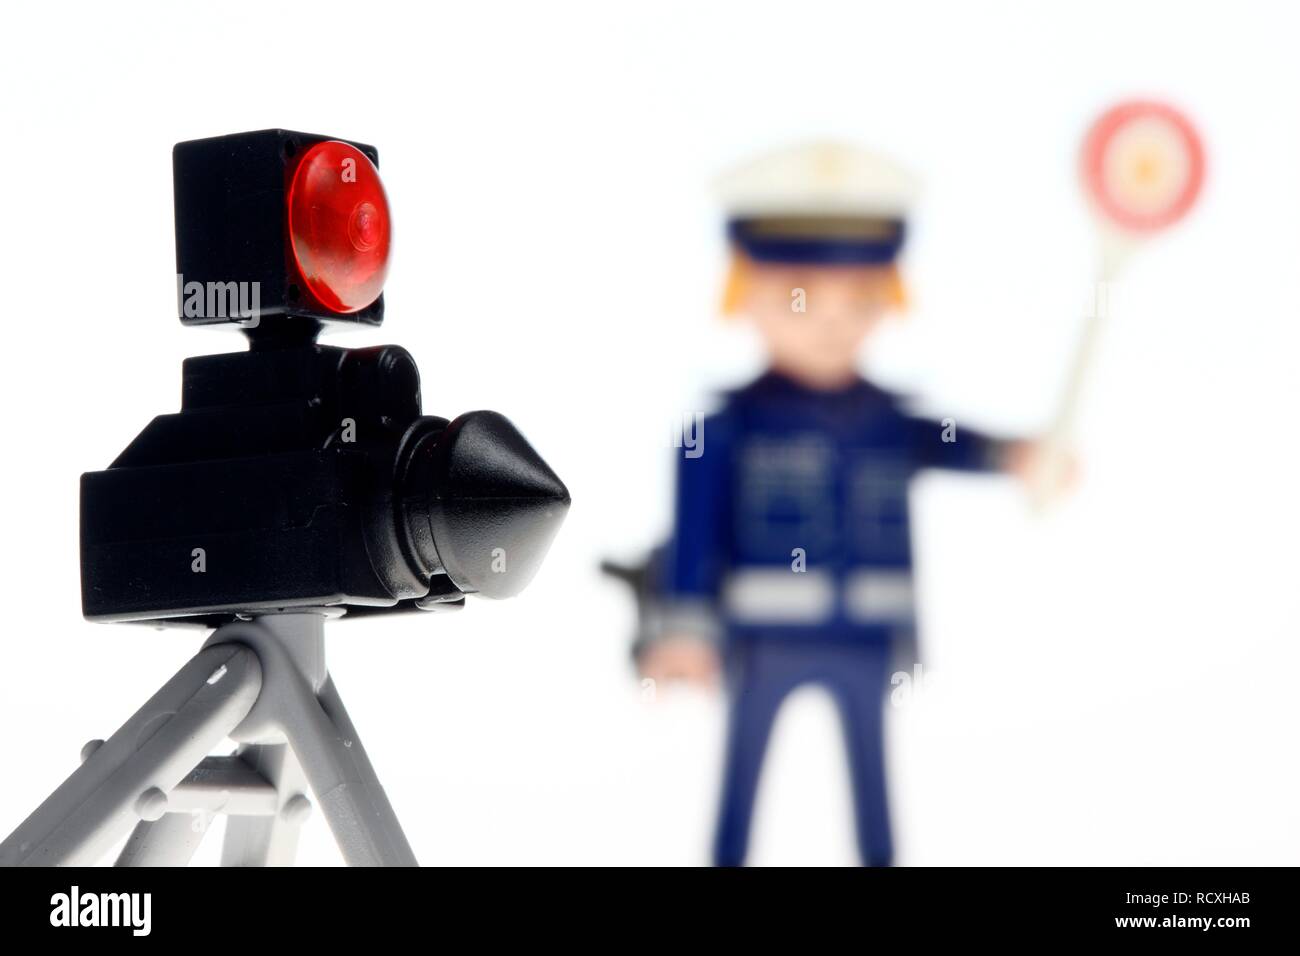 Playmobil figure, un policier portant un uniforme bleu, panneau d'arrêt et d'un appareil radar de la police pour mesurer la vitesse des véhicules Banque D'Images